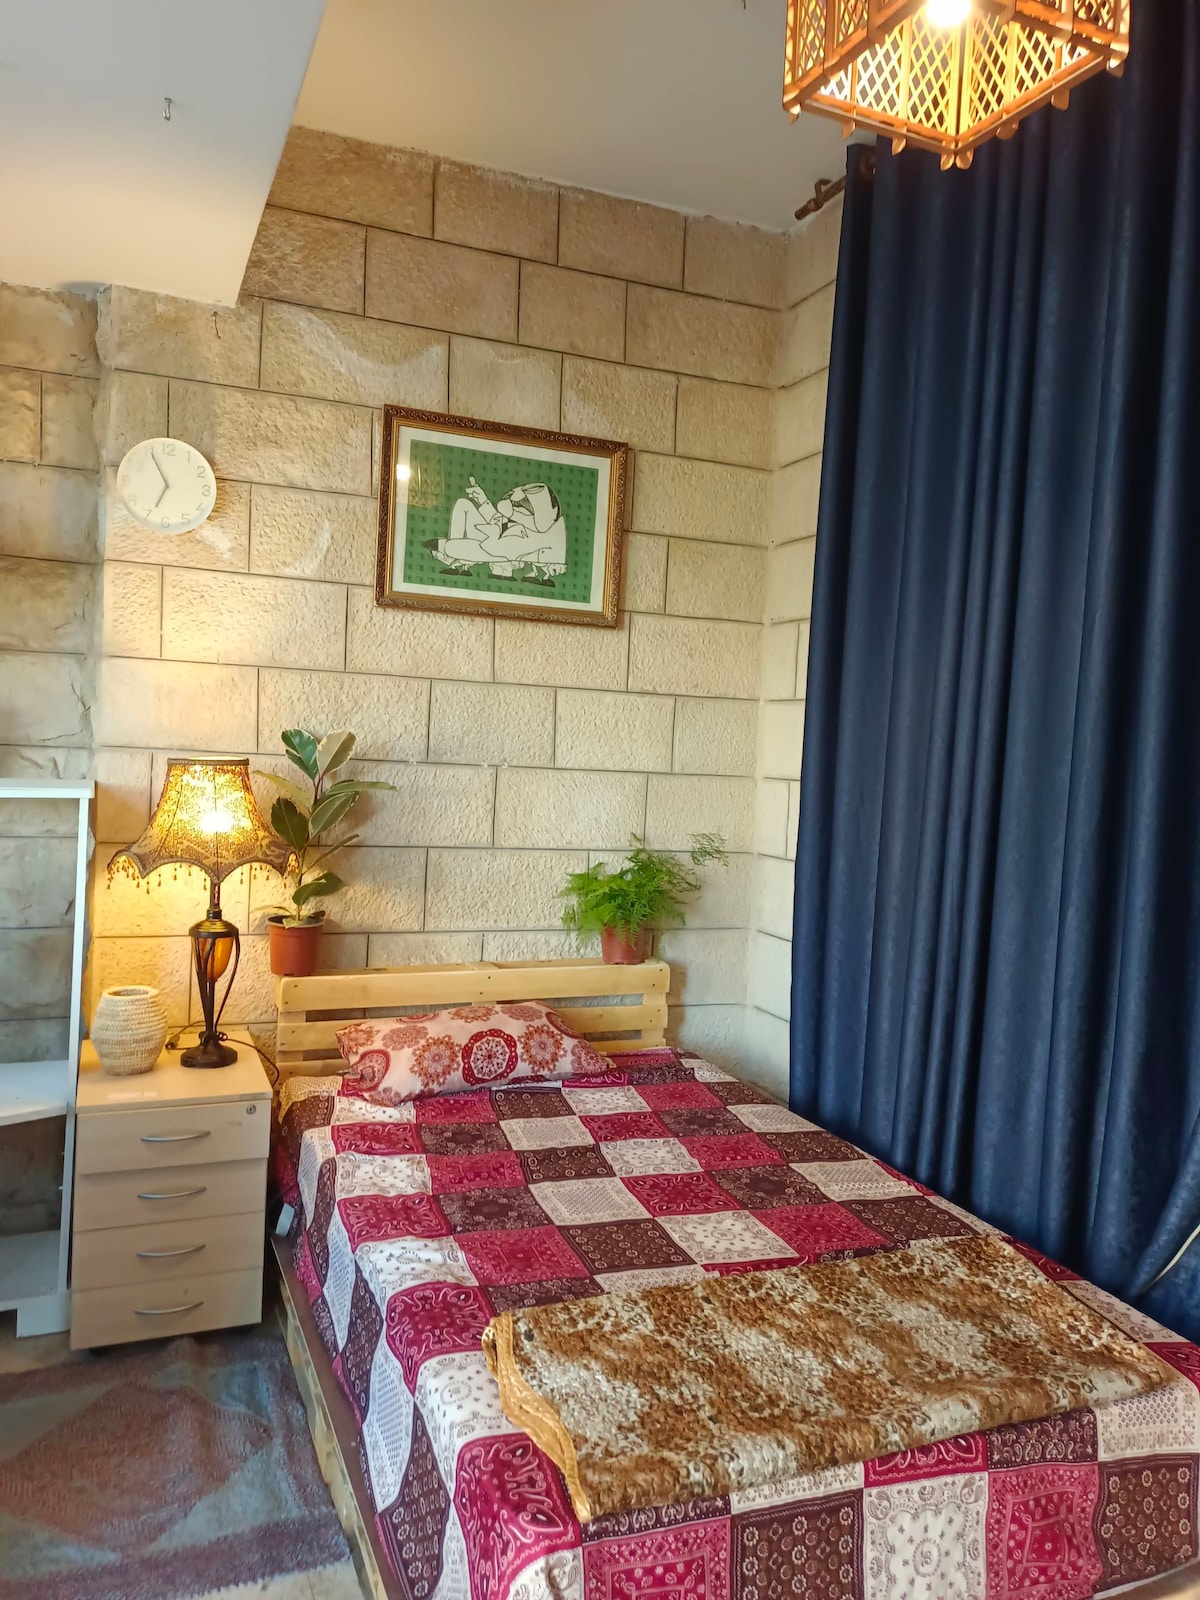 「Alrahhal」客房中的单人卧室